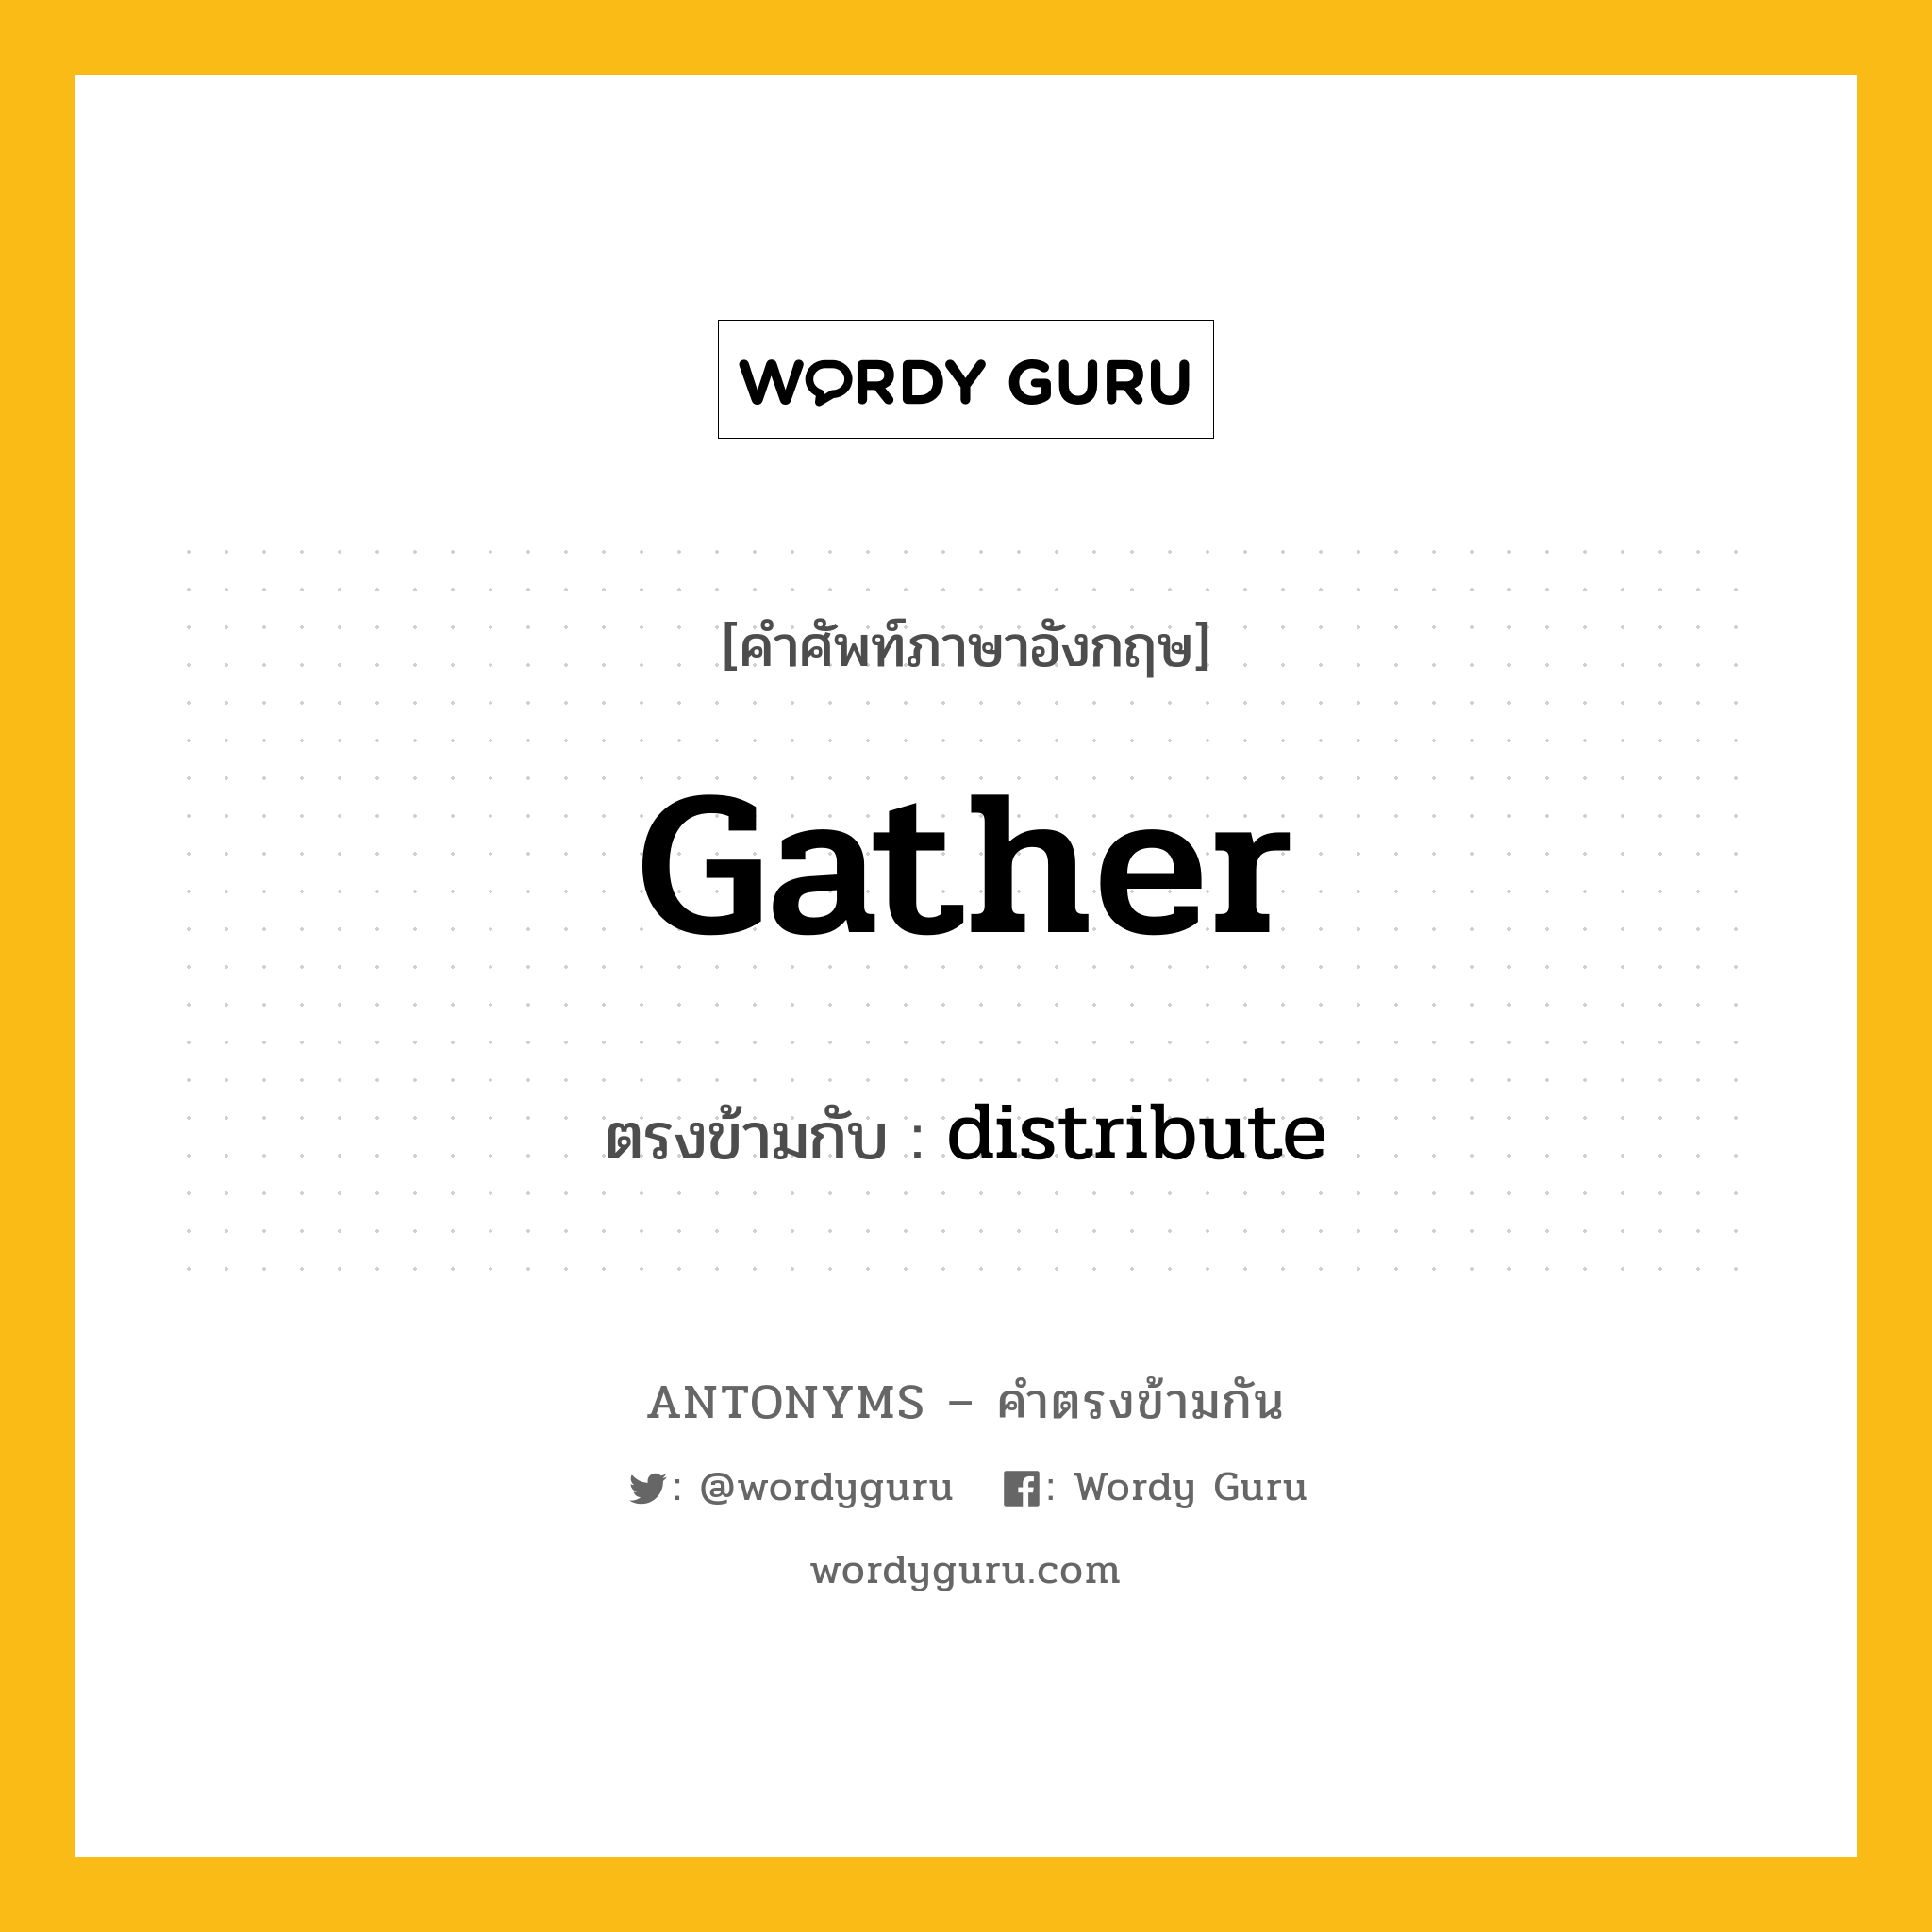 gather เป็นคำตรงข้ามกับคำไหนบ้าง?, คำศัพท์ภาษาอังกฤษ gather ตรงข้ามกับ distribute หมวด distribute